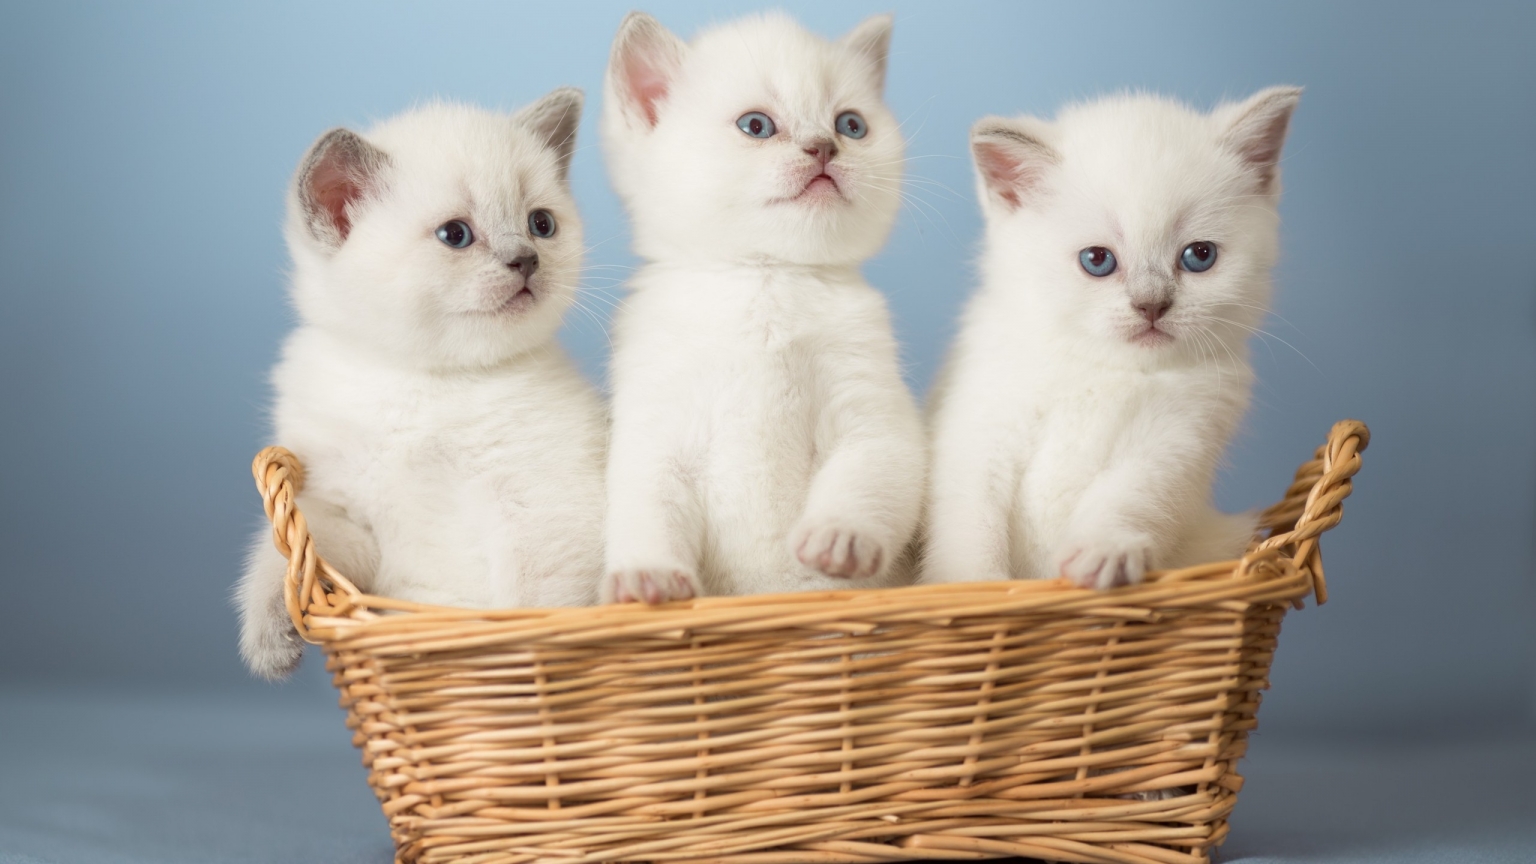 White Kittens for 1536 x 864 HDTV resolution